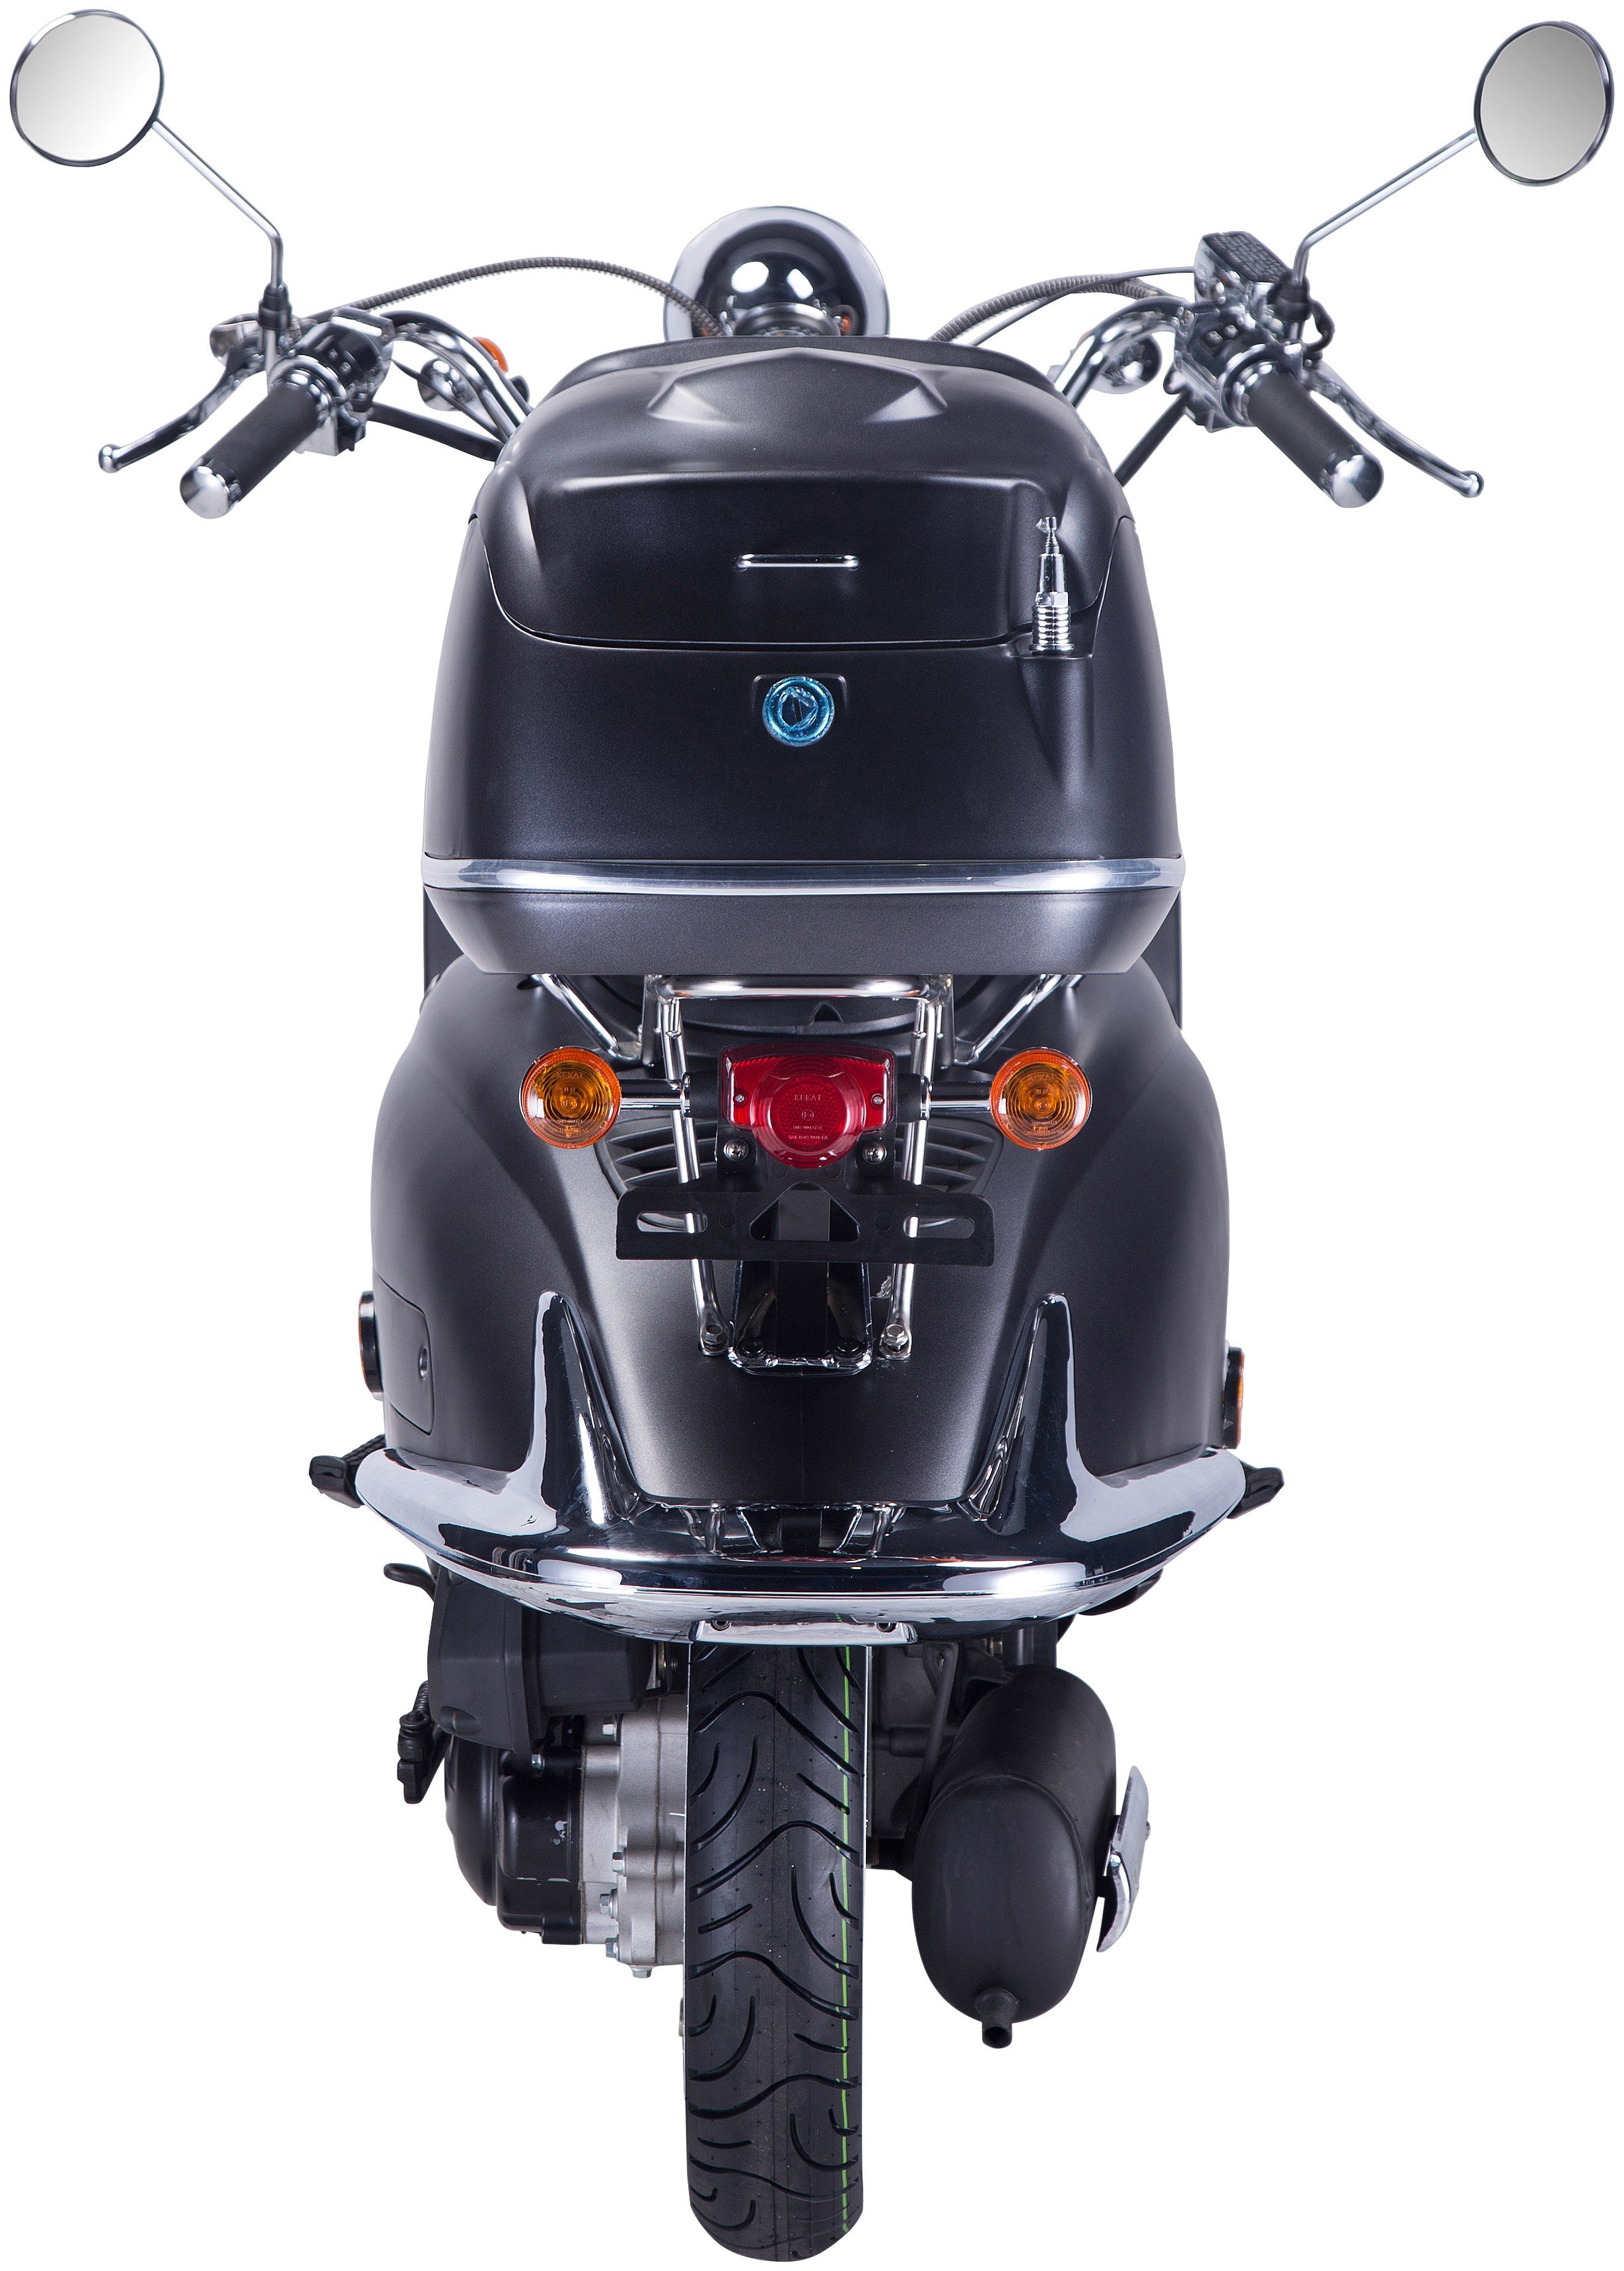 GT UNION Motorroller 125 85 km/h, Strada, Euro Topcase ccm, schwarz/silberfarben (Set), mit 5